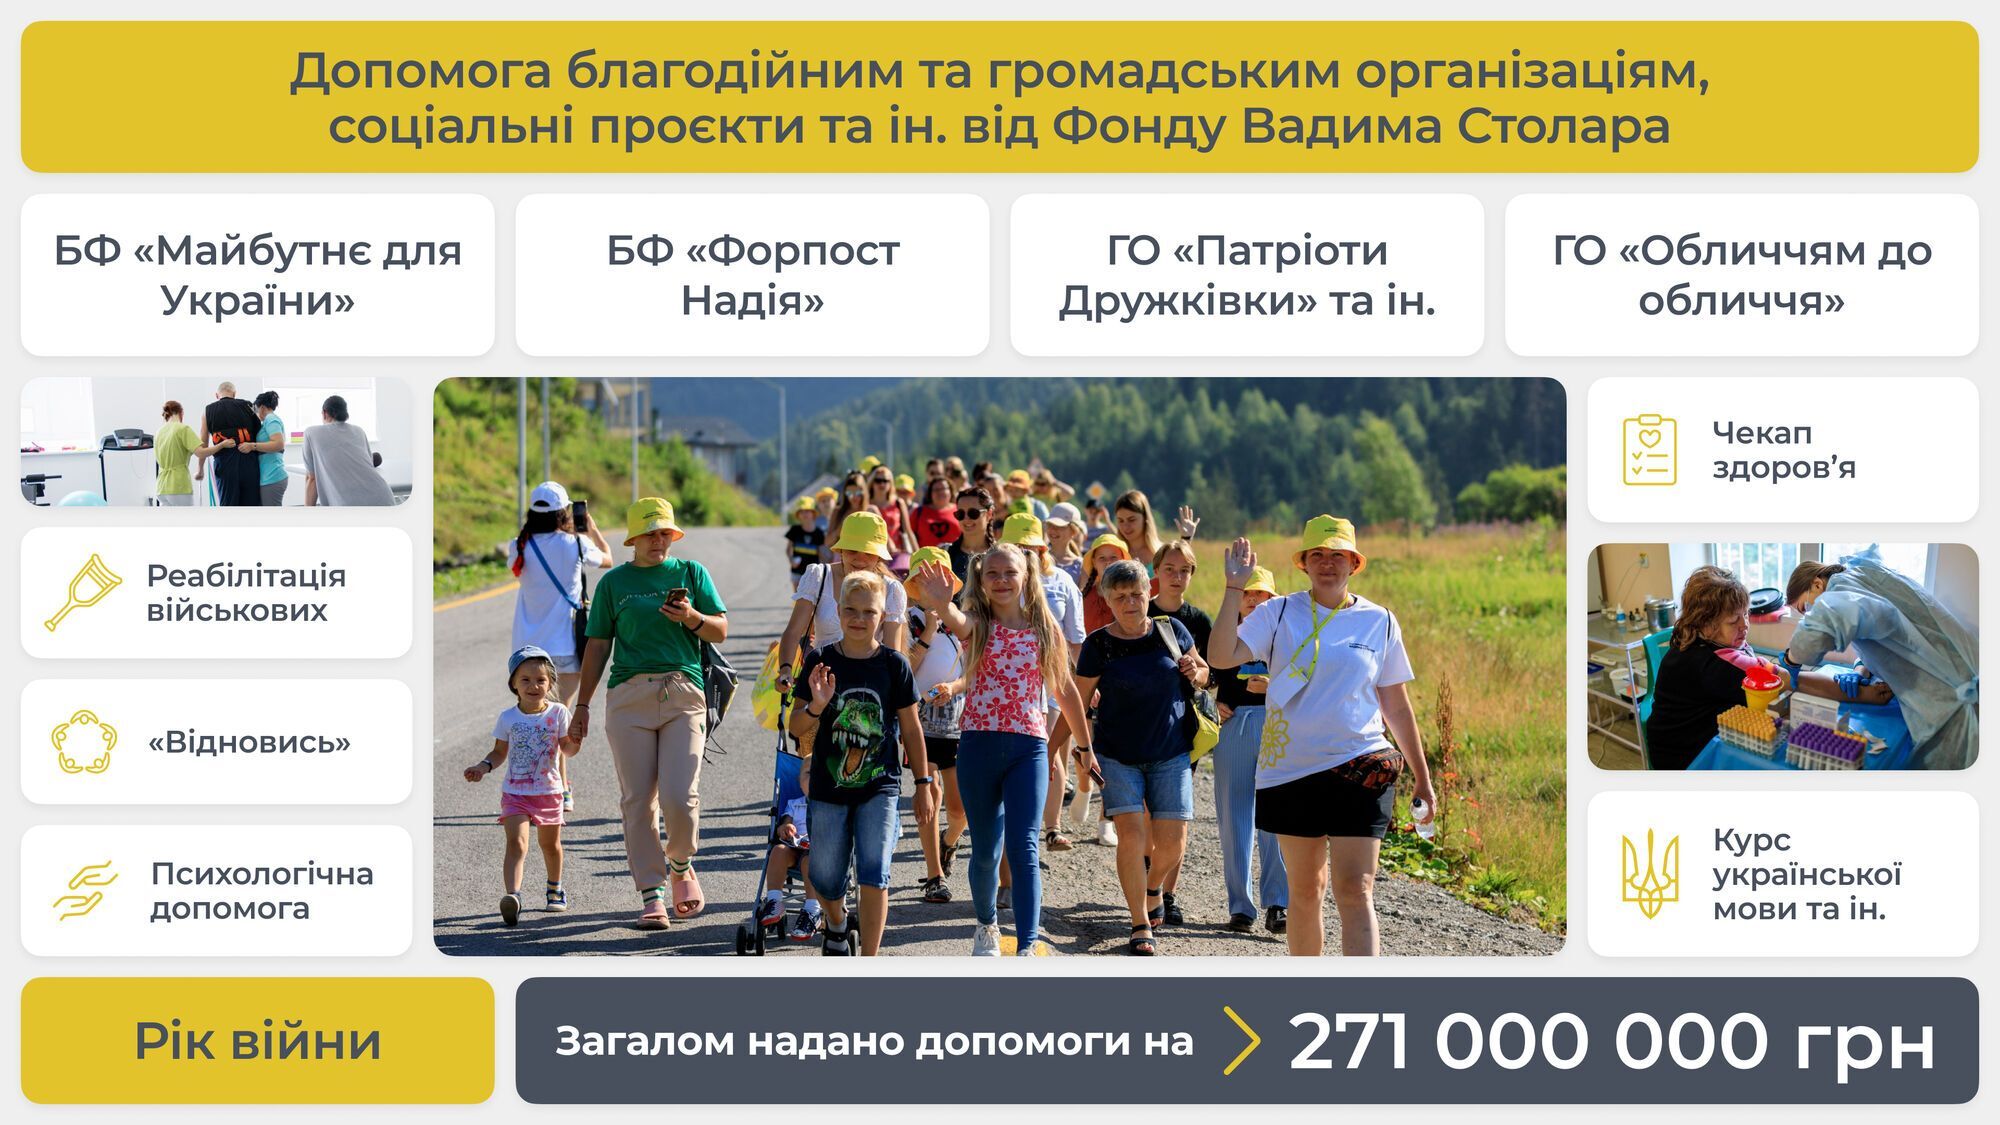 Благодійний фонд Вадима Столара за рік війни надав допомоги на 271 млн грн